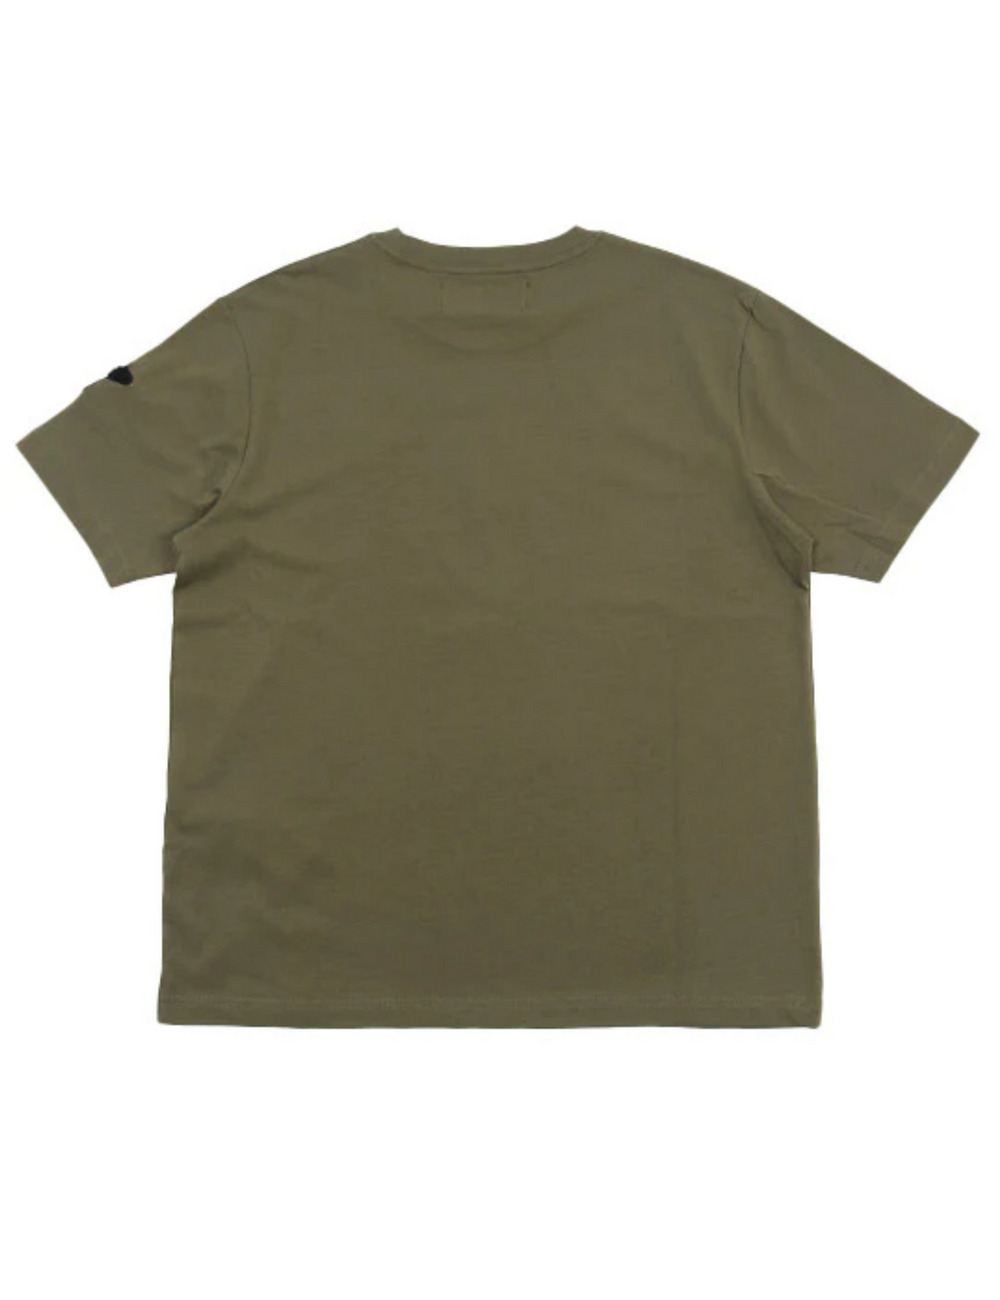 レインボースカルTシャツ(半袖) / RAINBOW SKULL T SHIRT 詳細画像 カーキ 2